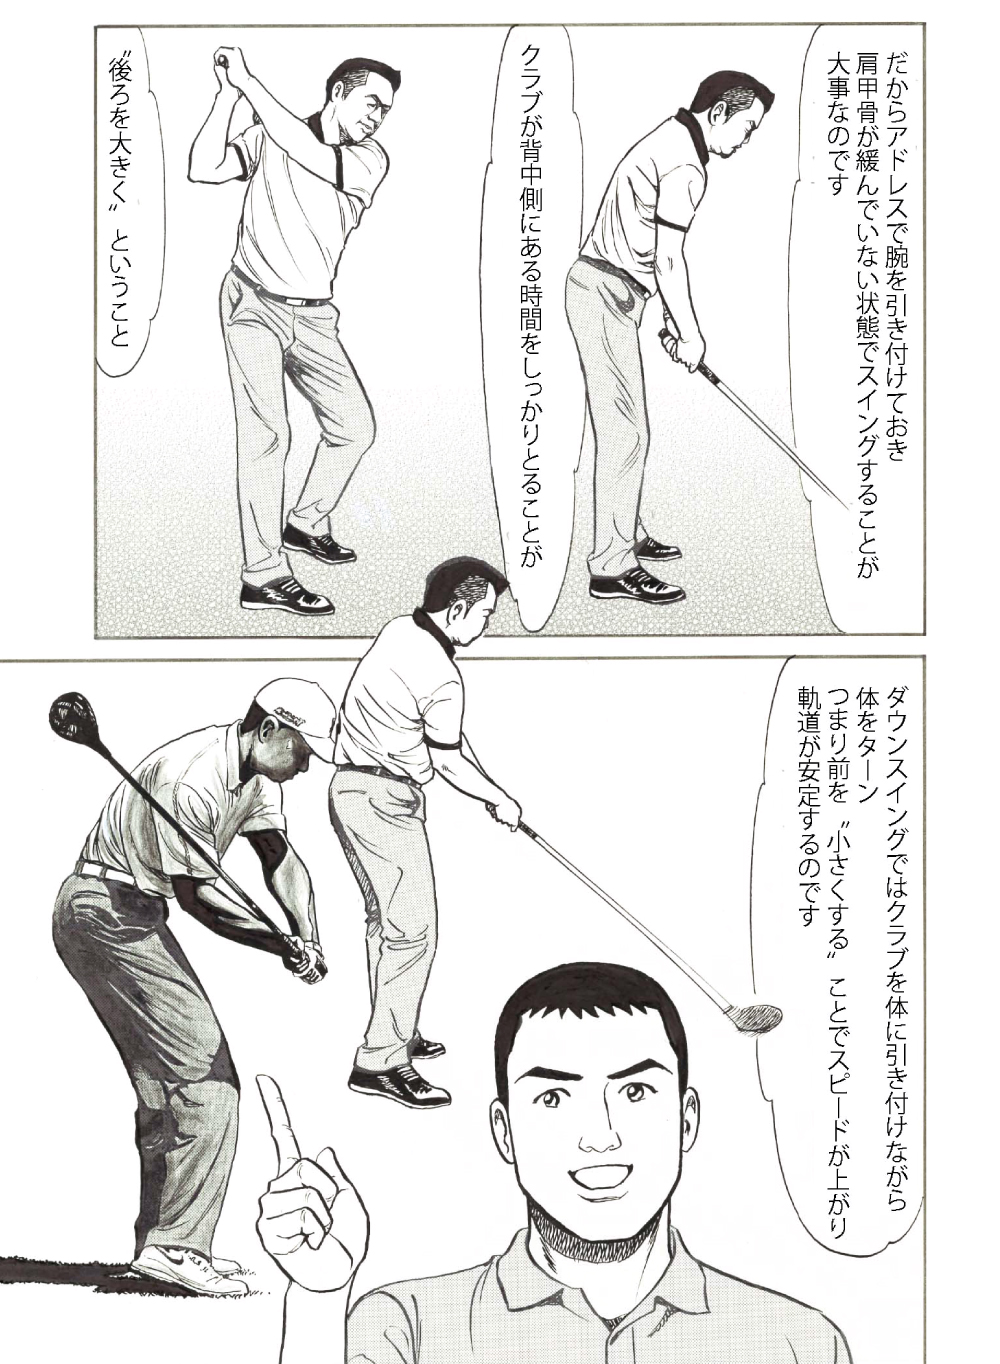 増田哲仁プロ解説 ゴルフスイングは 後ろ大きく前小さく で飛ばすのです スコアアップにつながるゴルフ理論 Honda Golf Honda